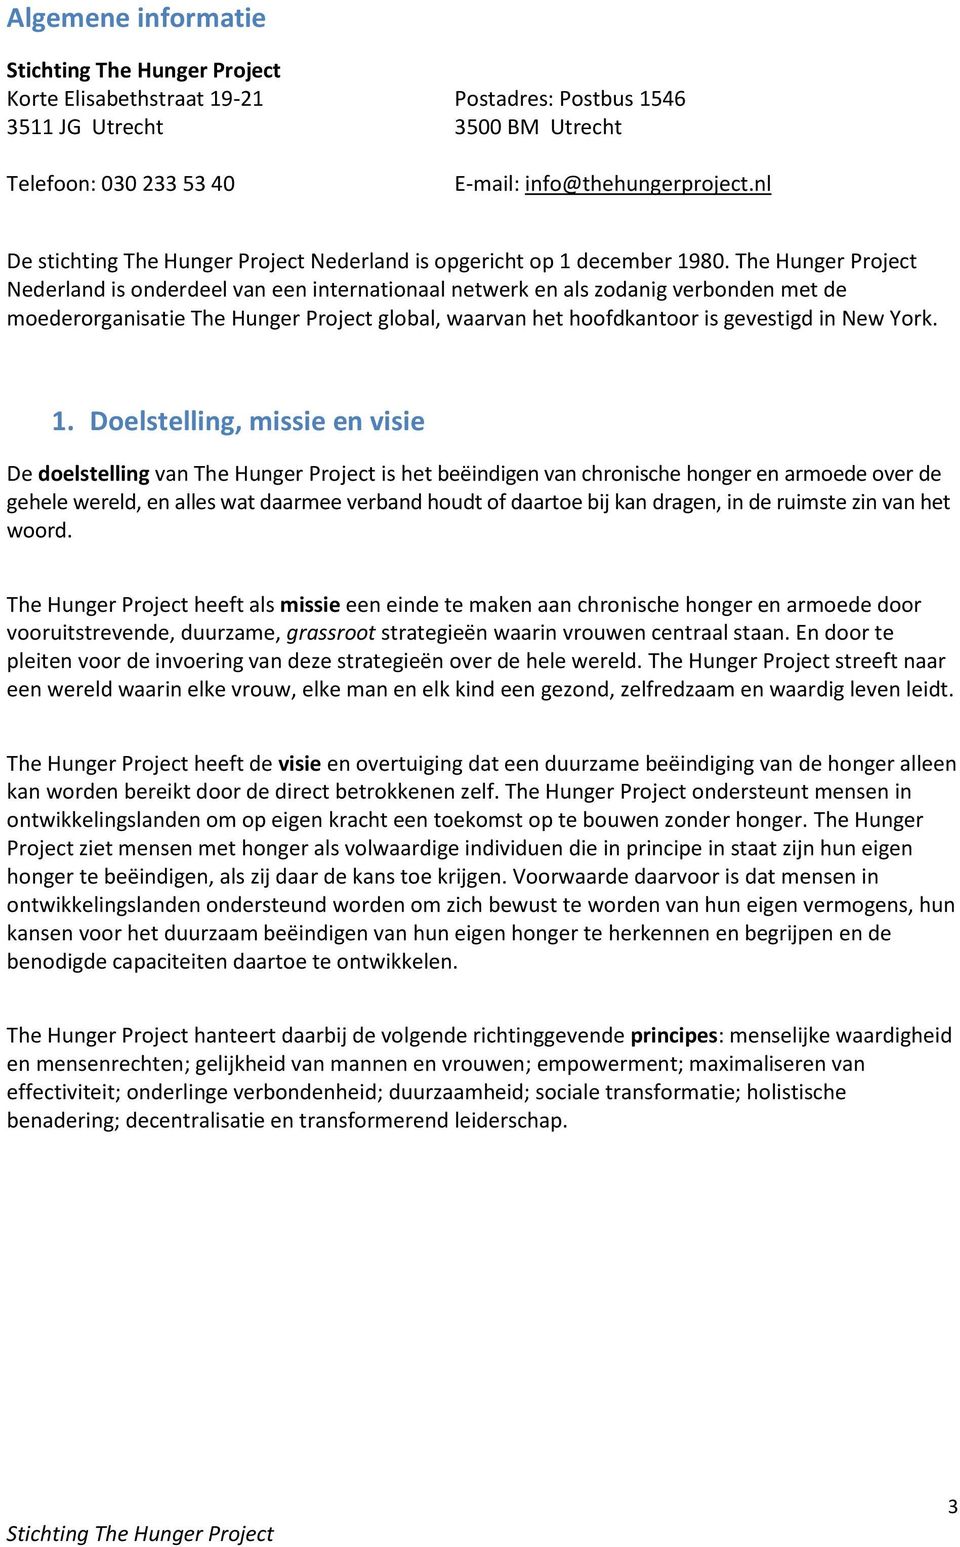 The Hunger Project Nederland is onderdeel van een internationaal netwerk en als zodanig verbonden met de moederorganisatie The Hunger Project global, waarvan het hoofdkantoor is gevestigd in New York.